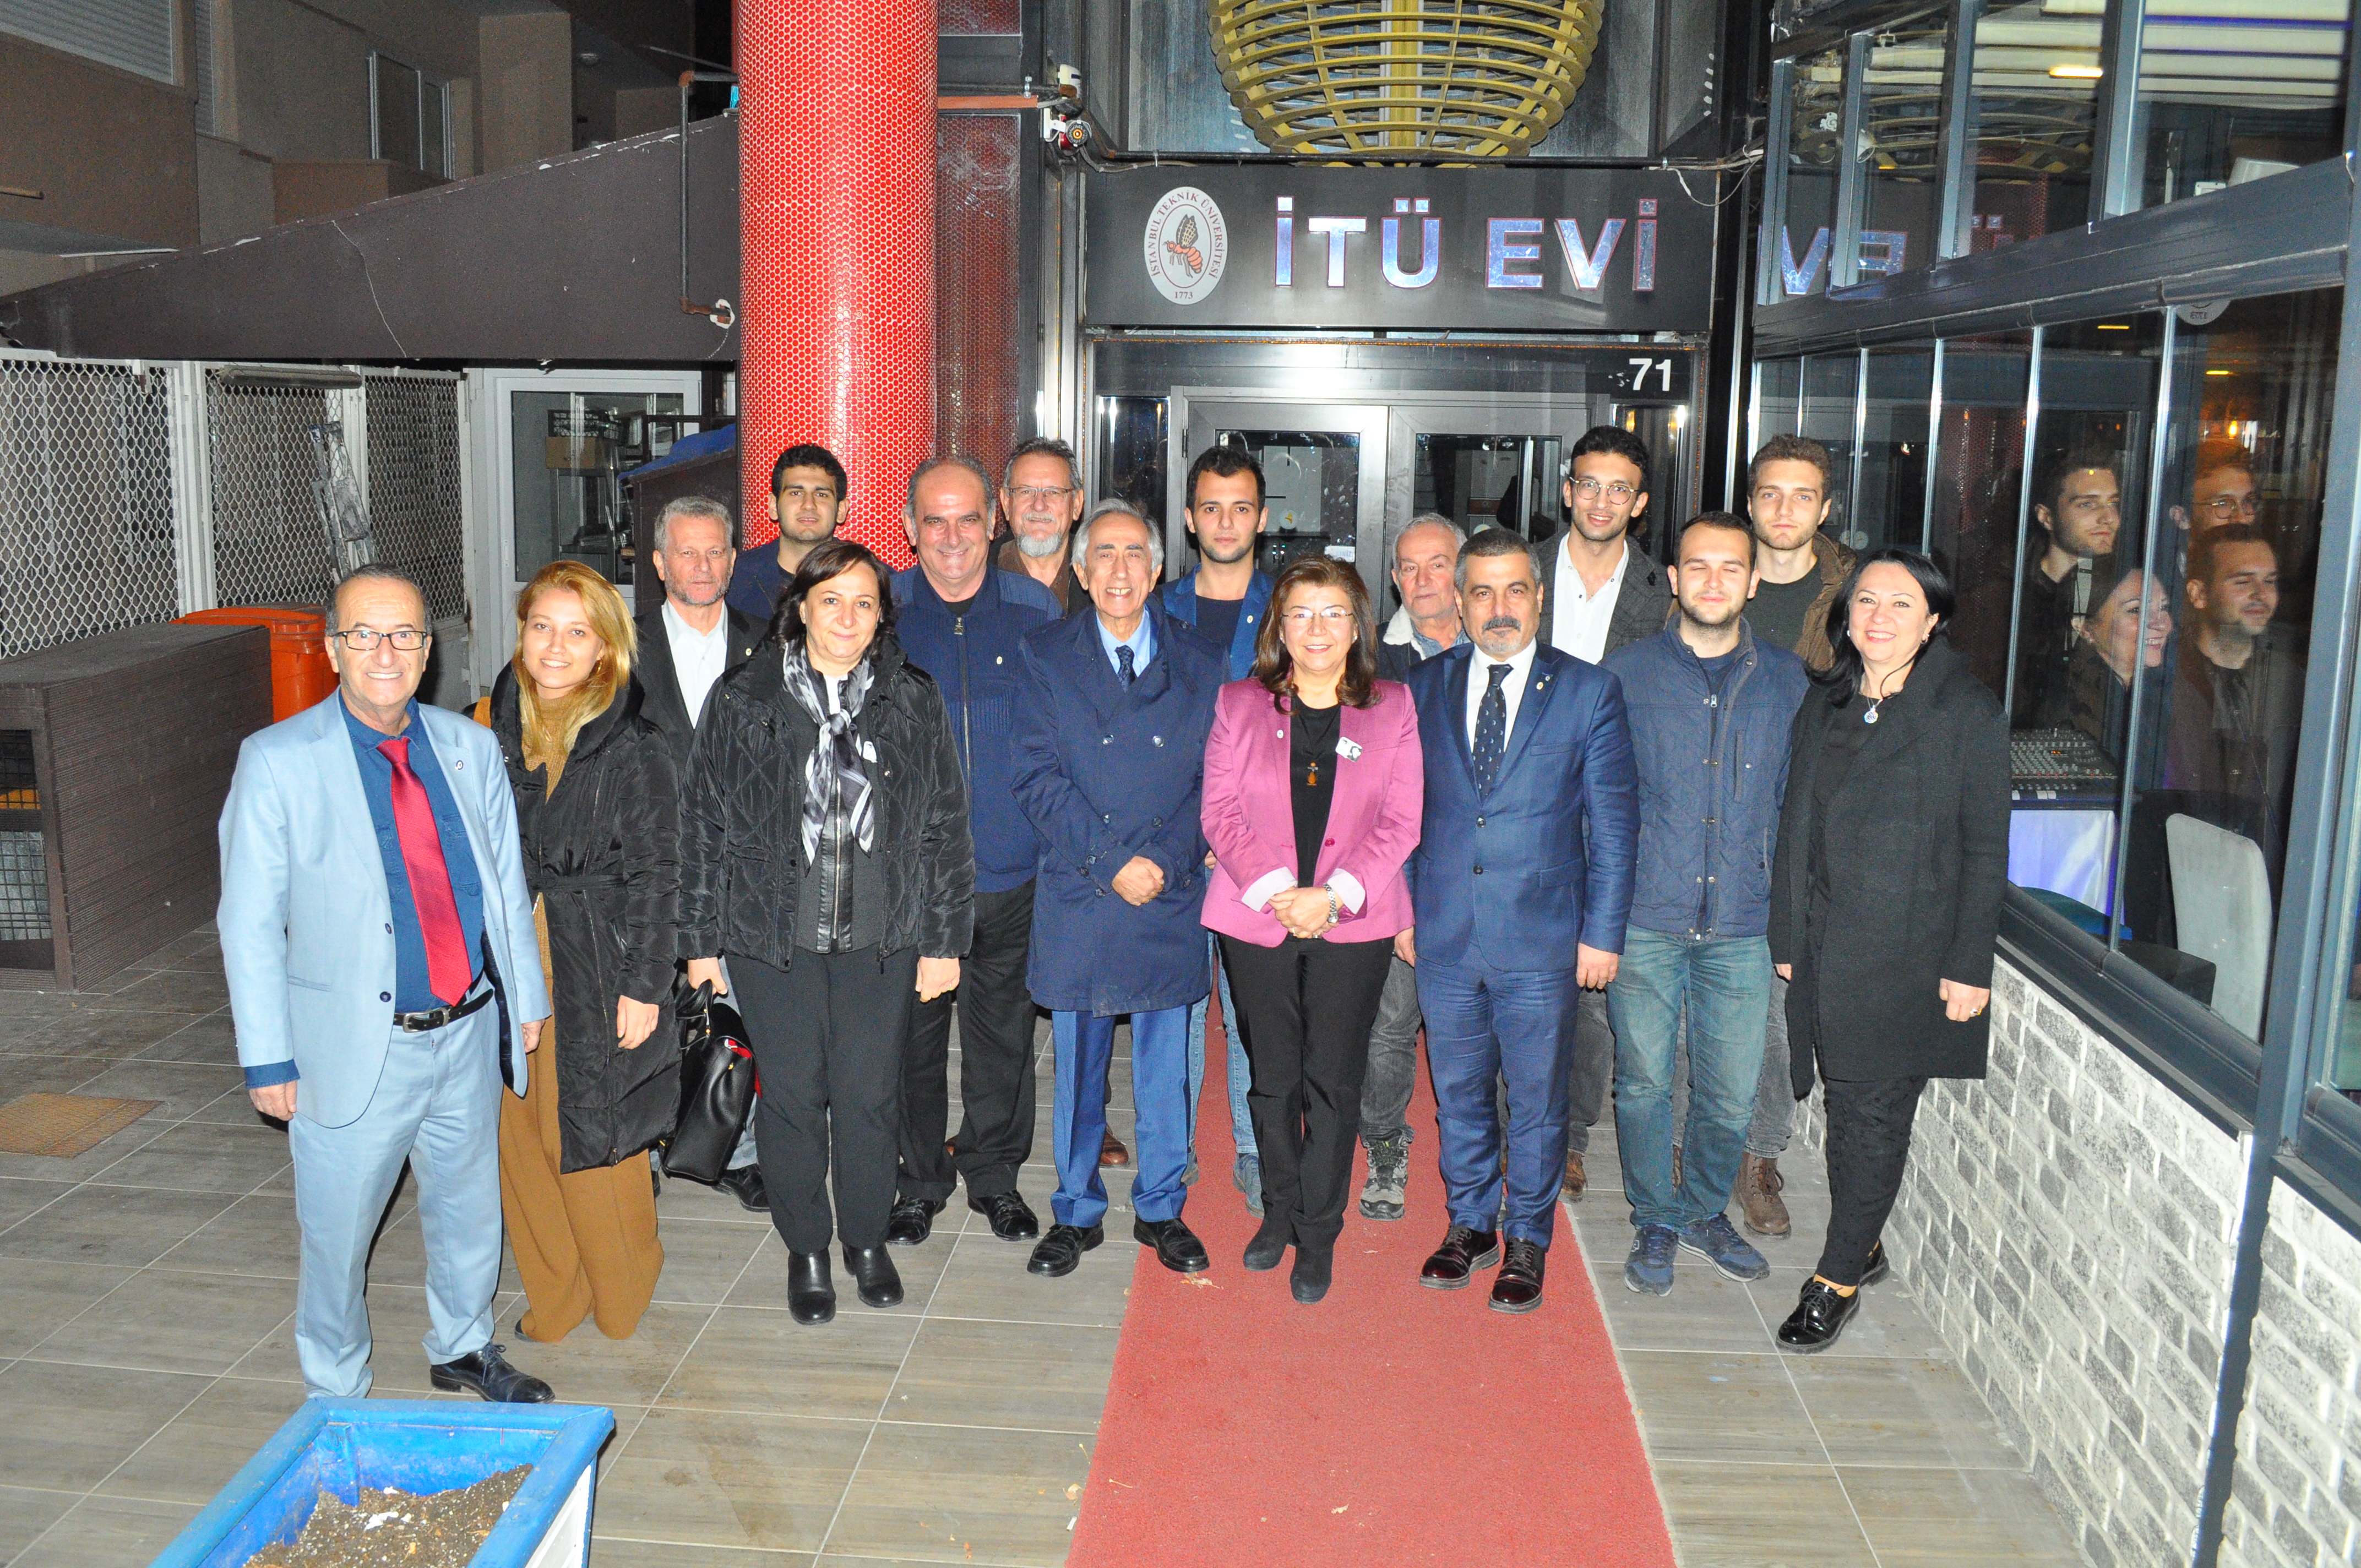 Ankara Genel Merkez Ziyaretimiz' i Anıtkabir'de Atamızın huzuruna çıktıktan sonra, öğrencilerimiz, ailelerimiz ile birlikte ziyaret ettik. 